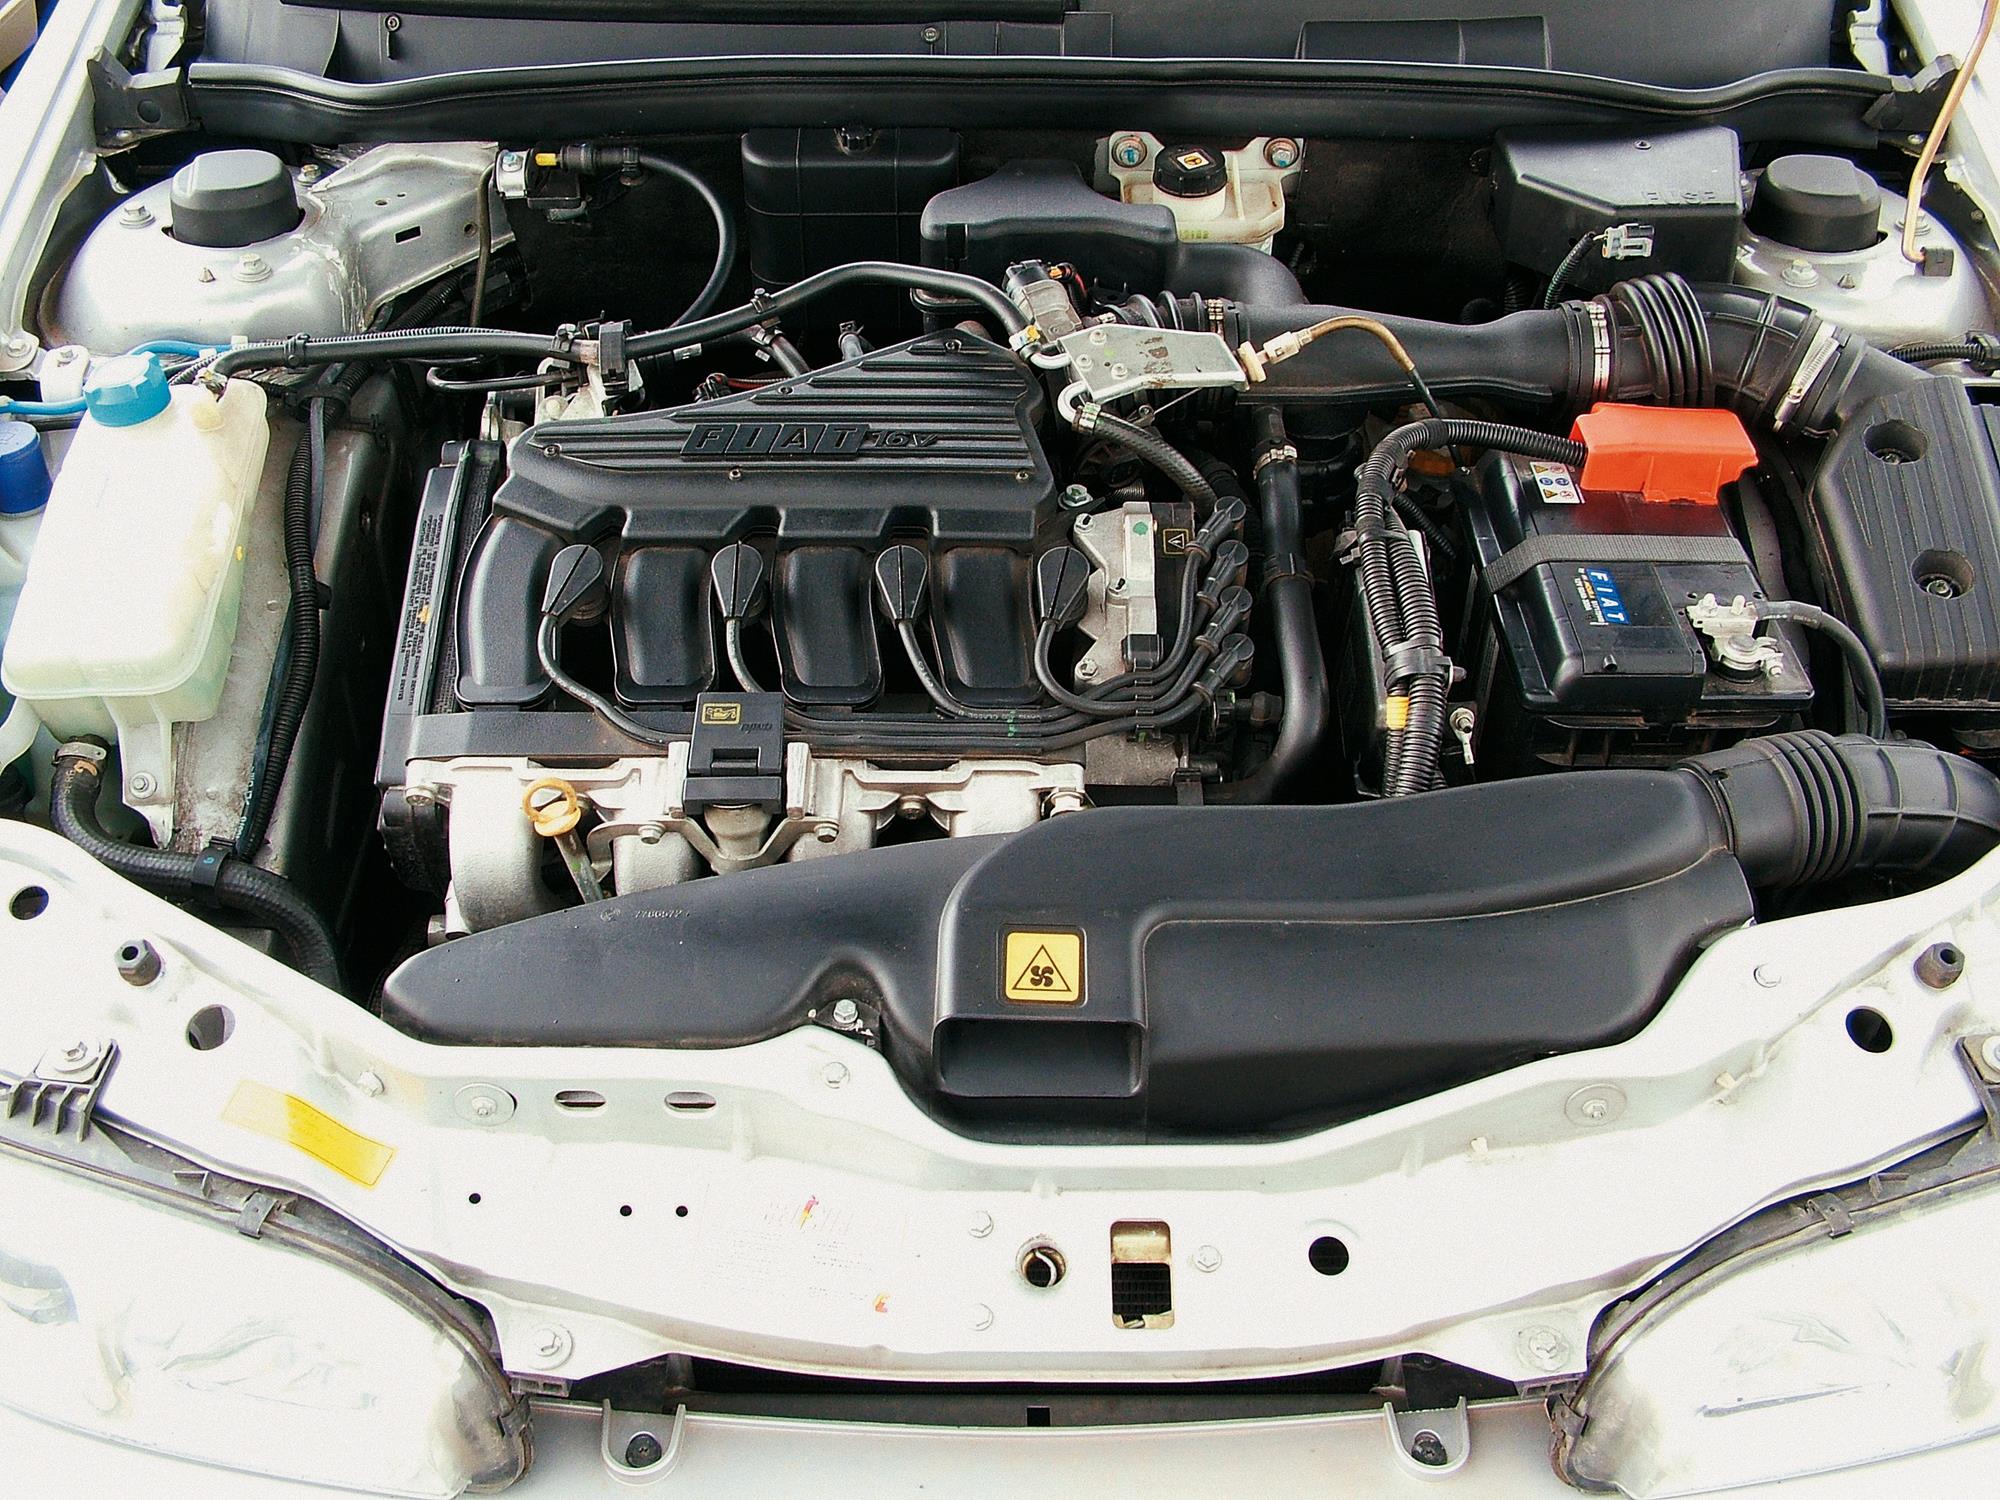 Motor do Marea SX 1.6 da Fiat, sedã modelo 2006, testado pela revista Quatro Rod_1